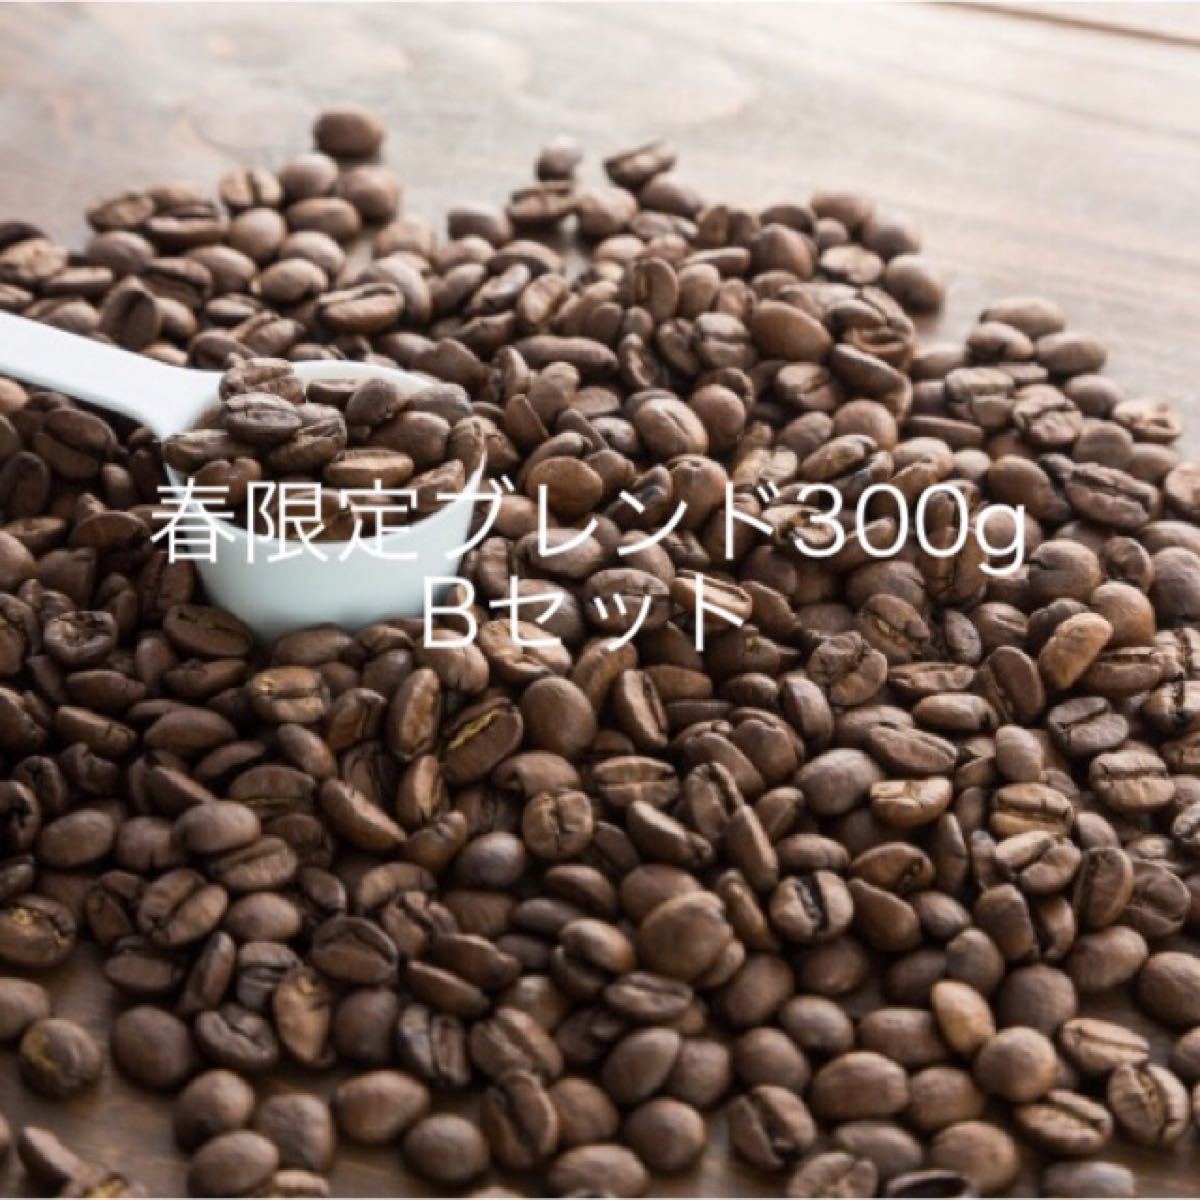 注文後焙煎》コーヒー豆3種飲み比べBセット300g(3×100g) ※即購入可 通販